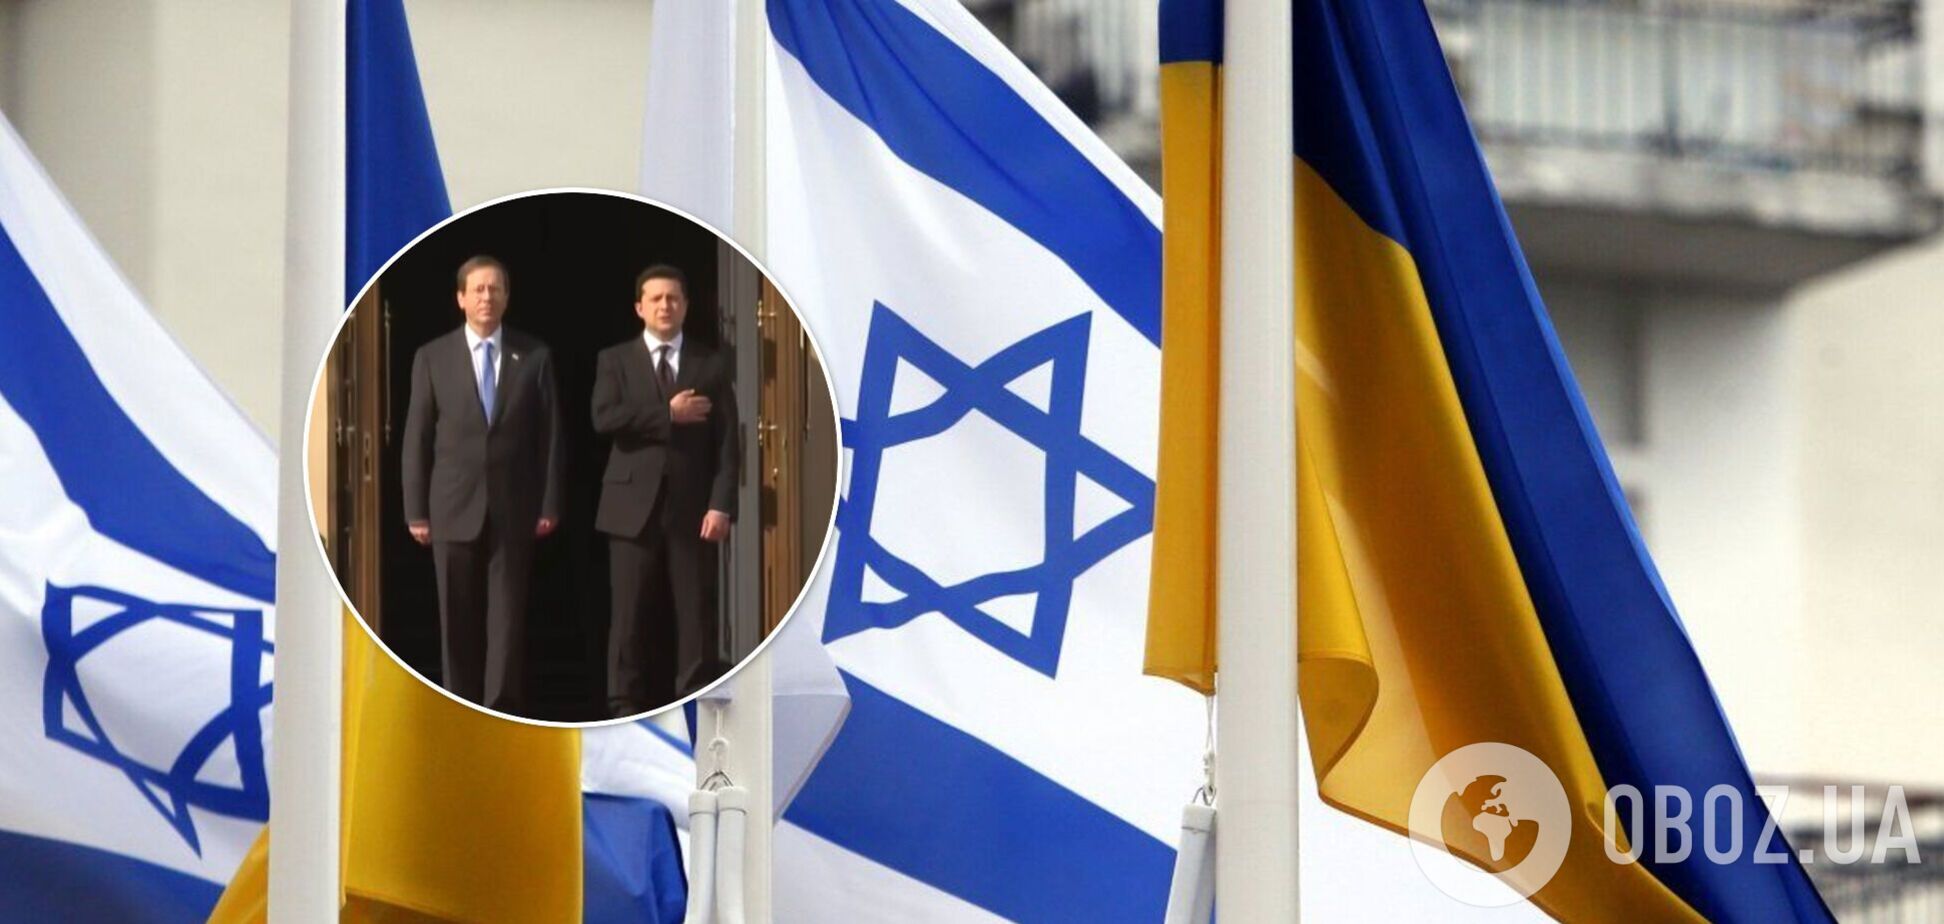 Президент Израиля прибыл в Украину с официальным визитом. Фото и видео